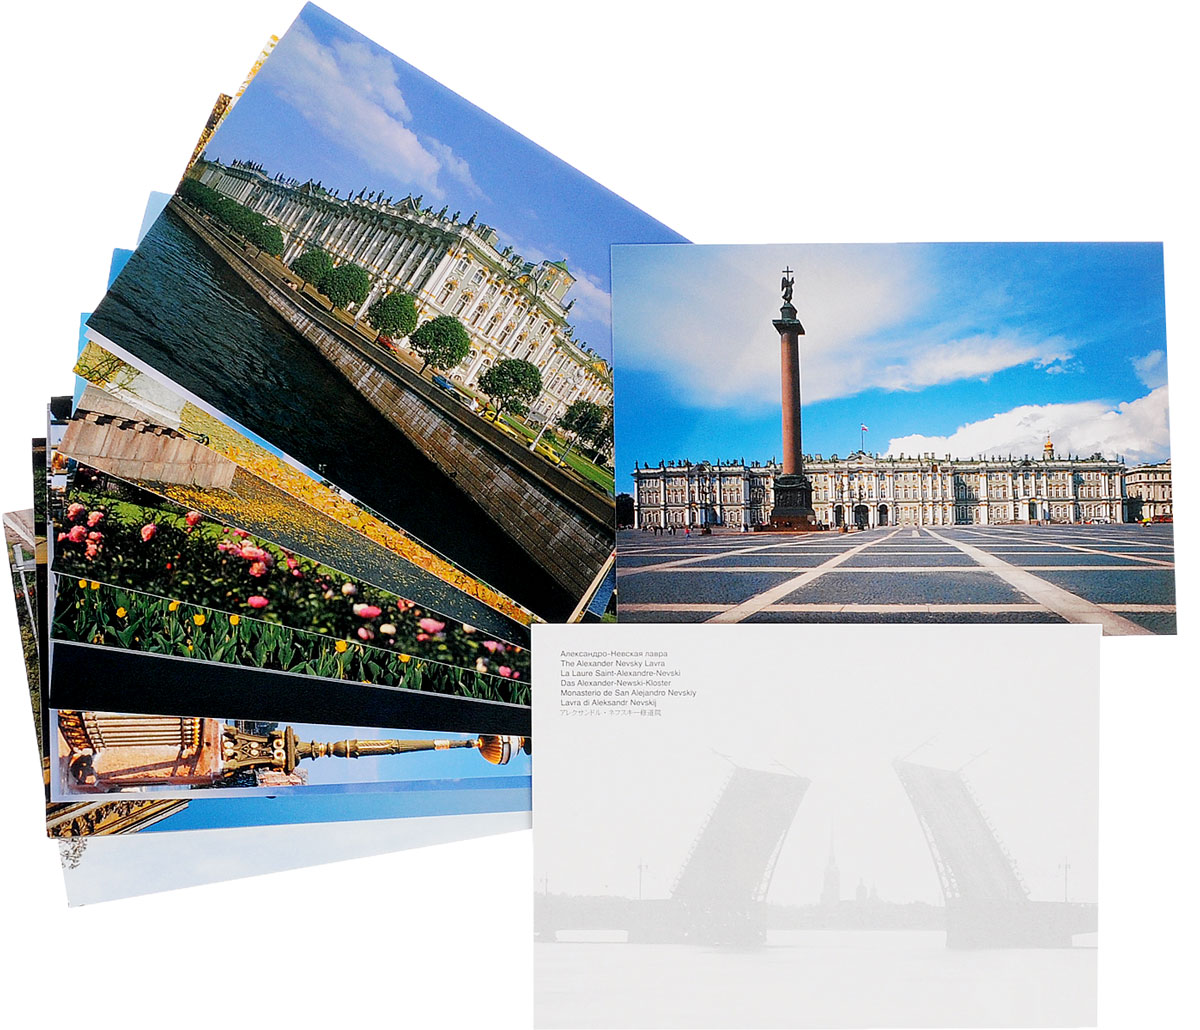 Санкт-Петербург 16 открыток) / Saint Petersburg: A Collection of 16 Postcards изменяется внимательно рассматривая